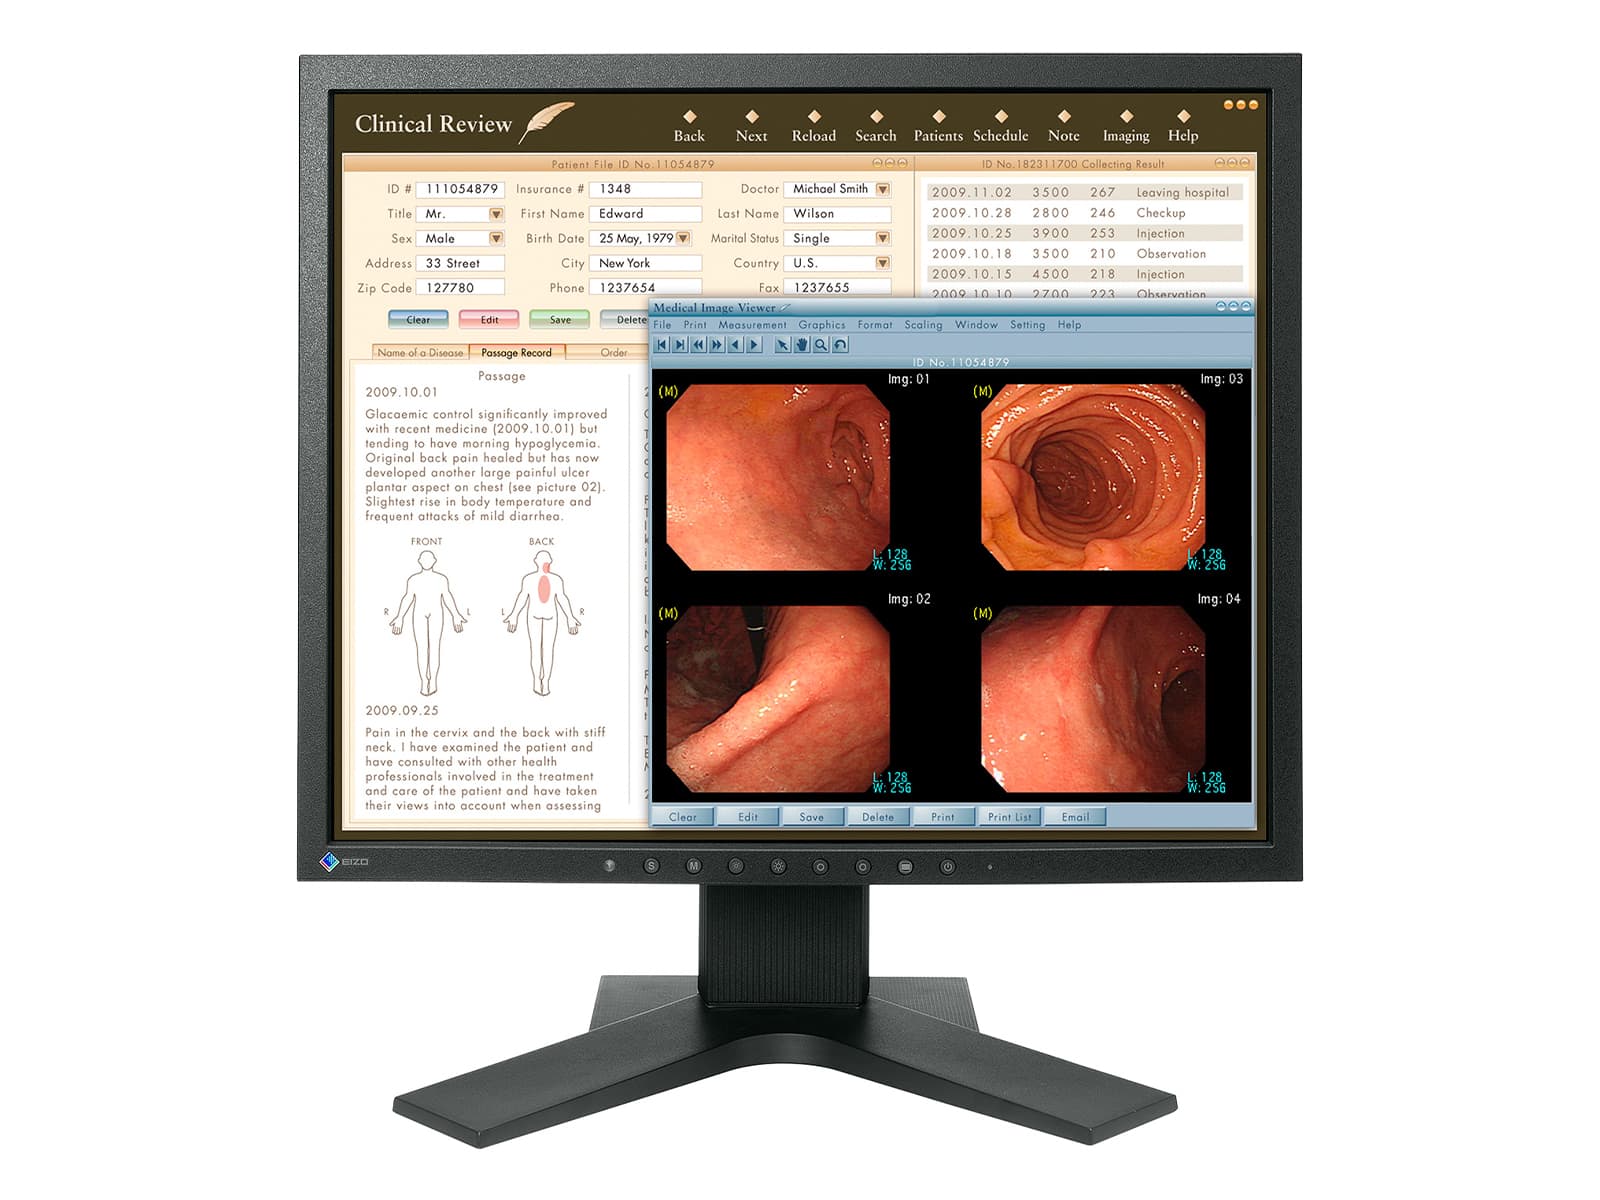 Monitor de revisión clínica Eizo Radiforce MX194 de 1 MP y 19" (MX194) Monitors.com